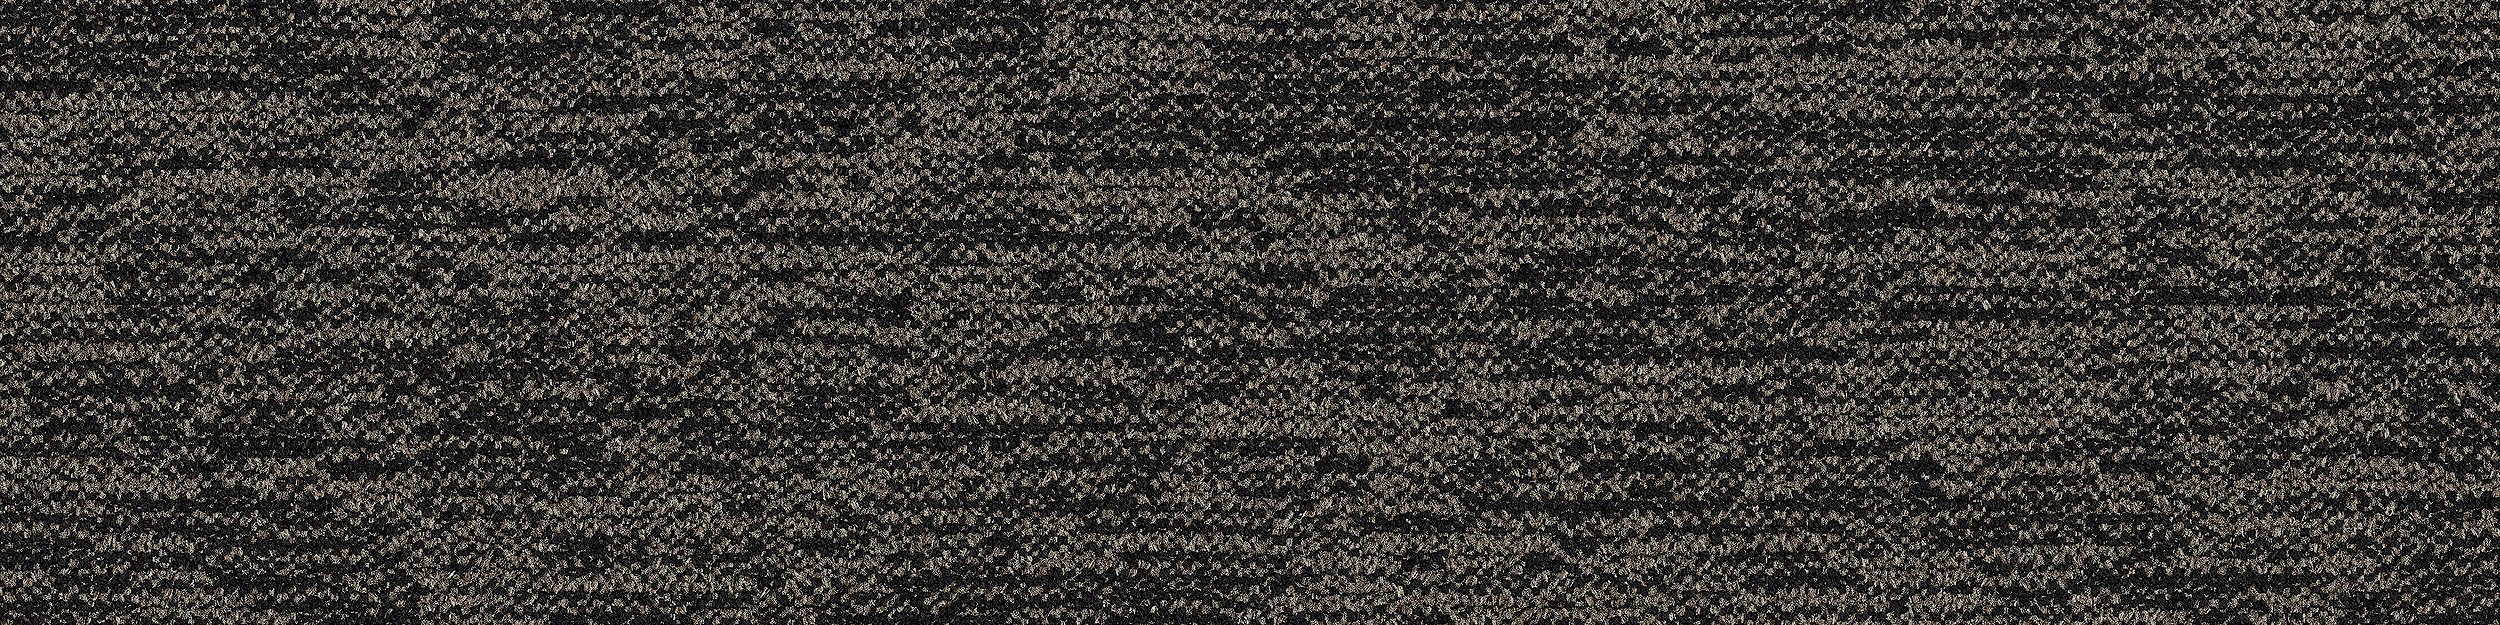 DL908 Carpet Tile In Basalt imagen número 13